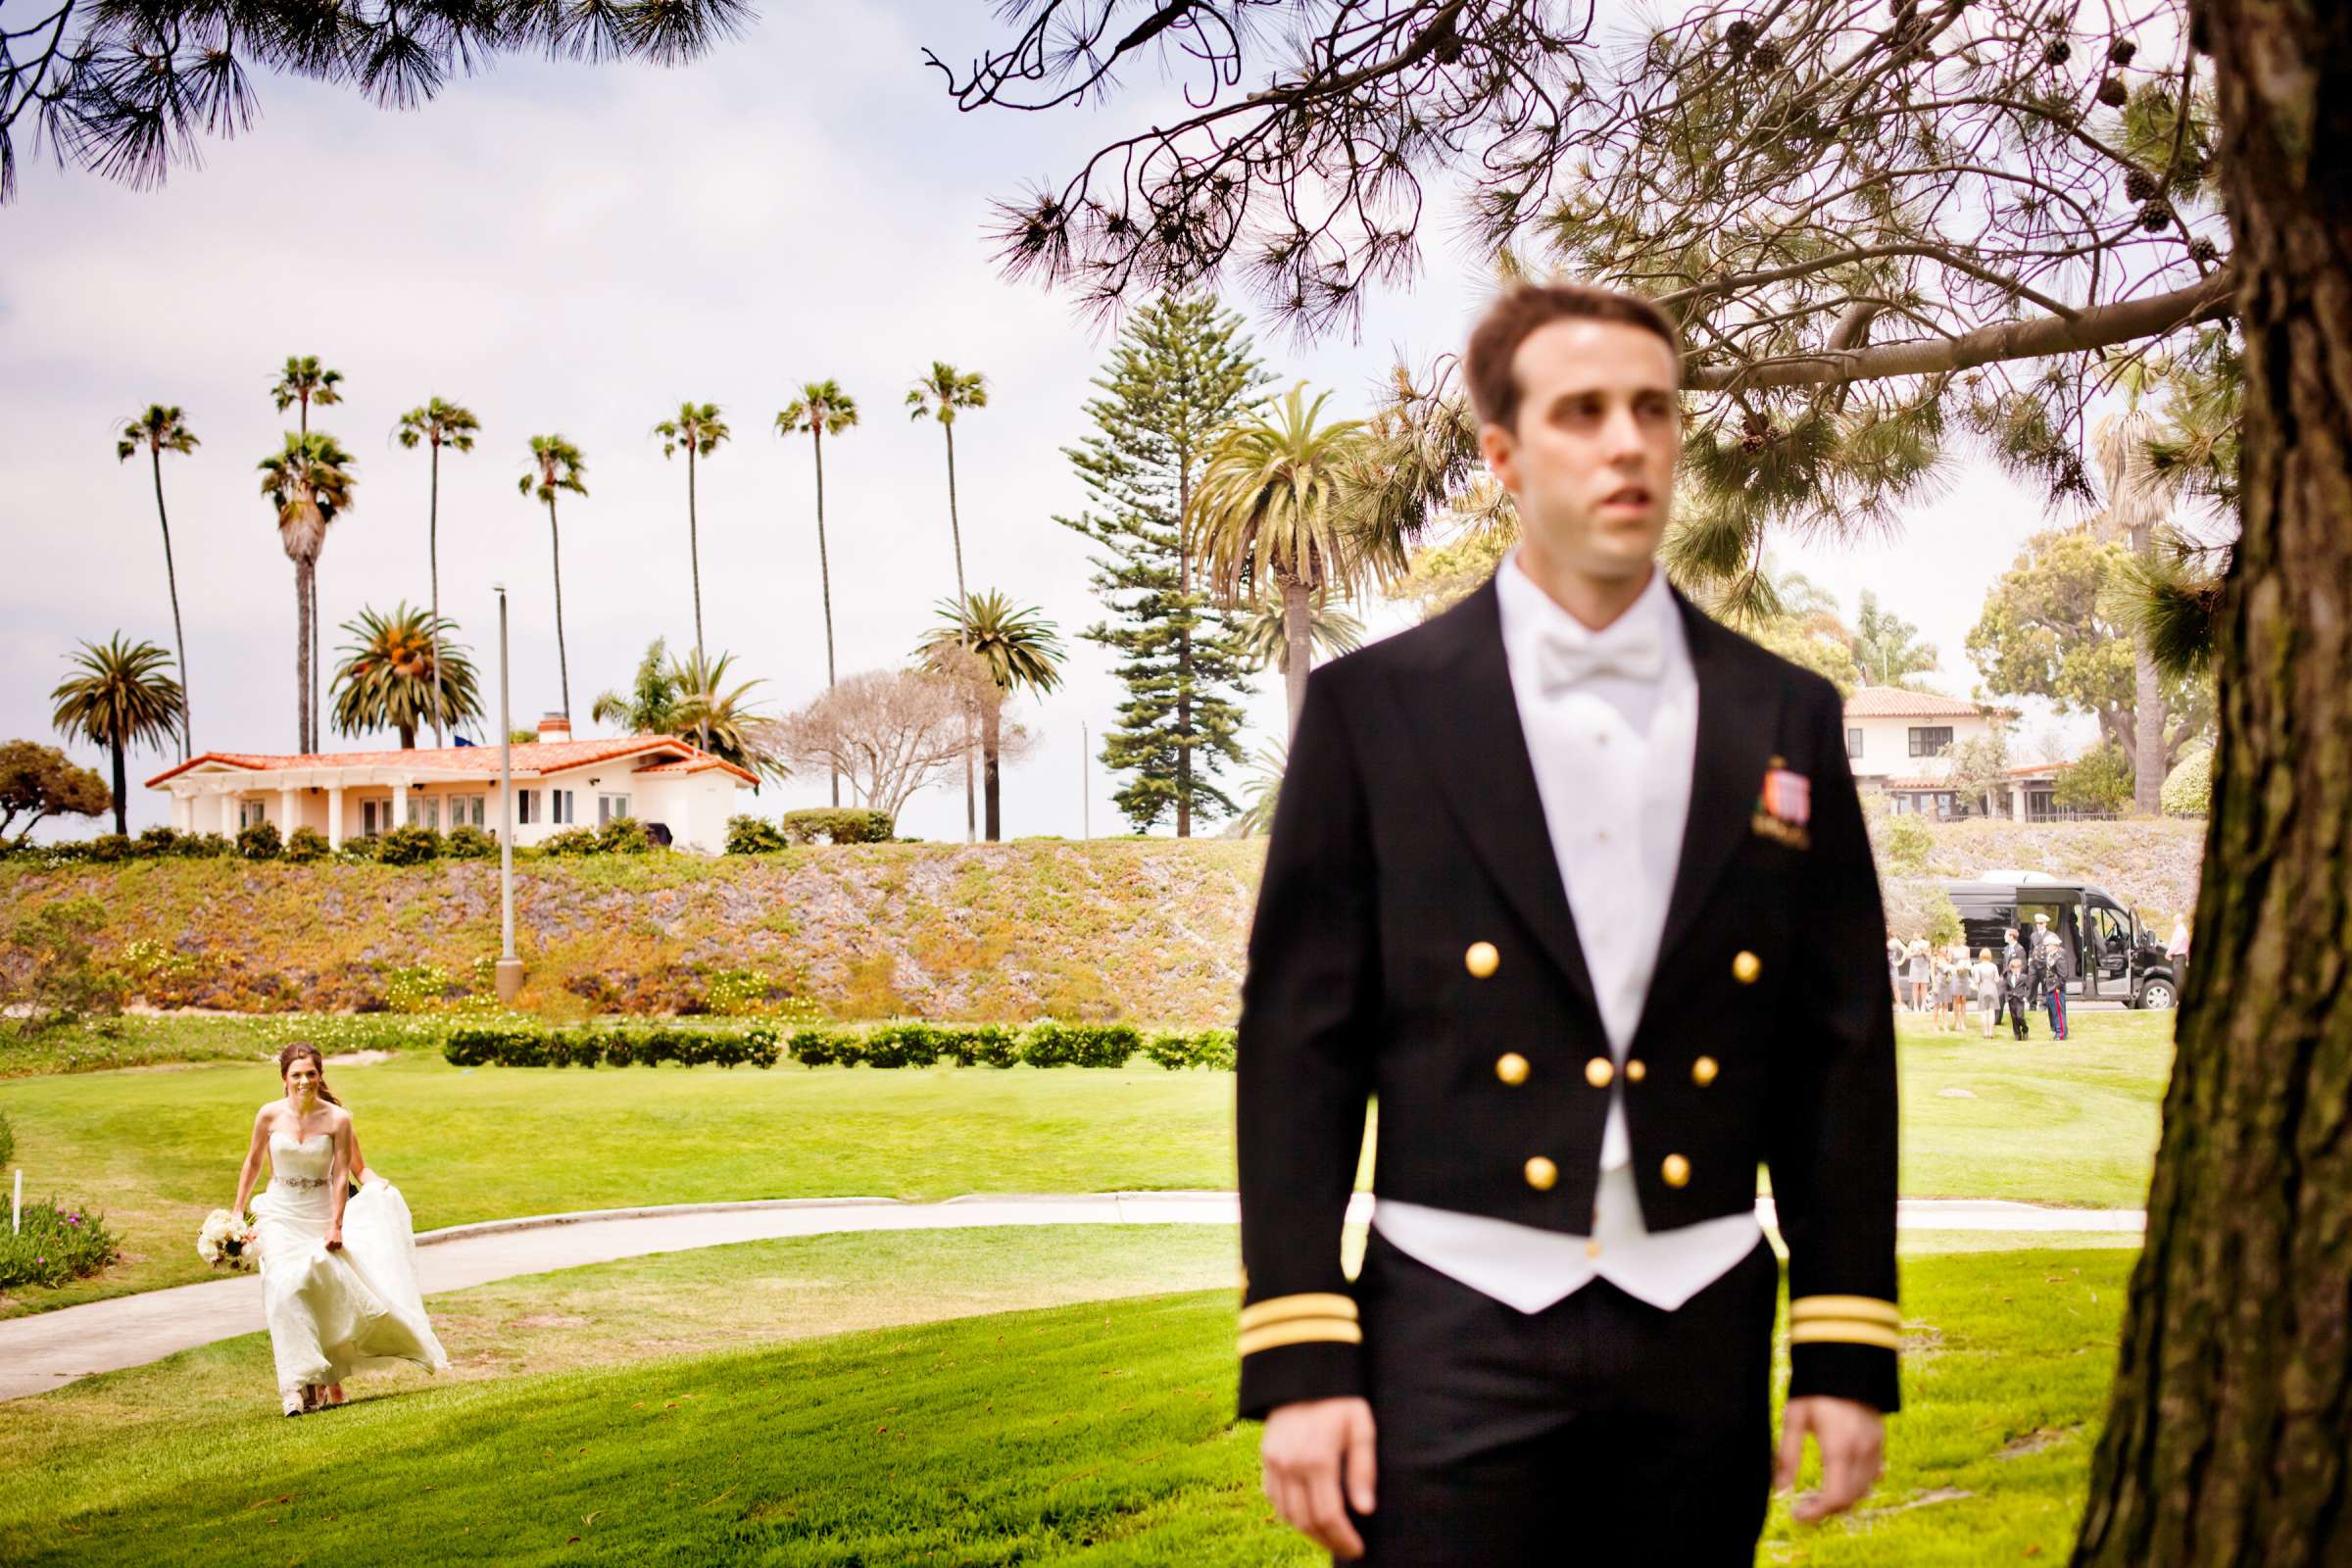 Admiral Kidd Club Wedding coordinated by I Do Weddings, Ashley and Rhett Wedding Photo #358440 by True Photography